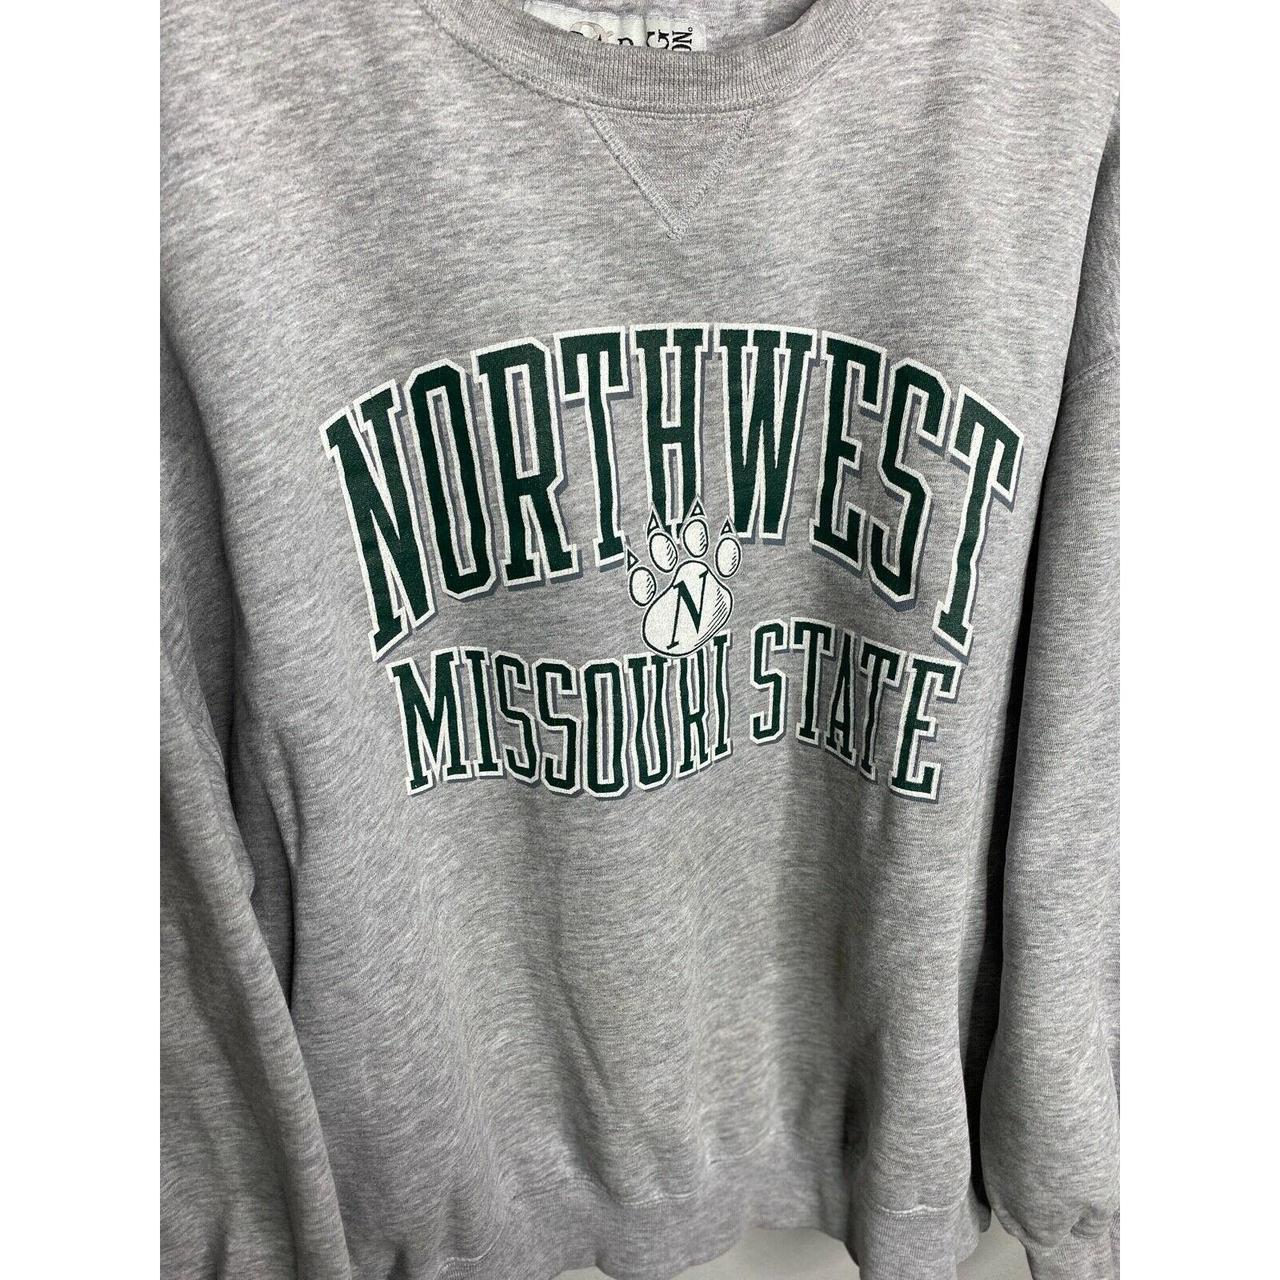 Product Image 2 - Vintage NCAA Northwest Missouri State